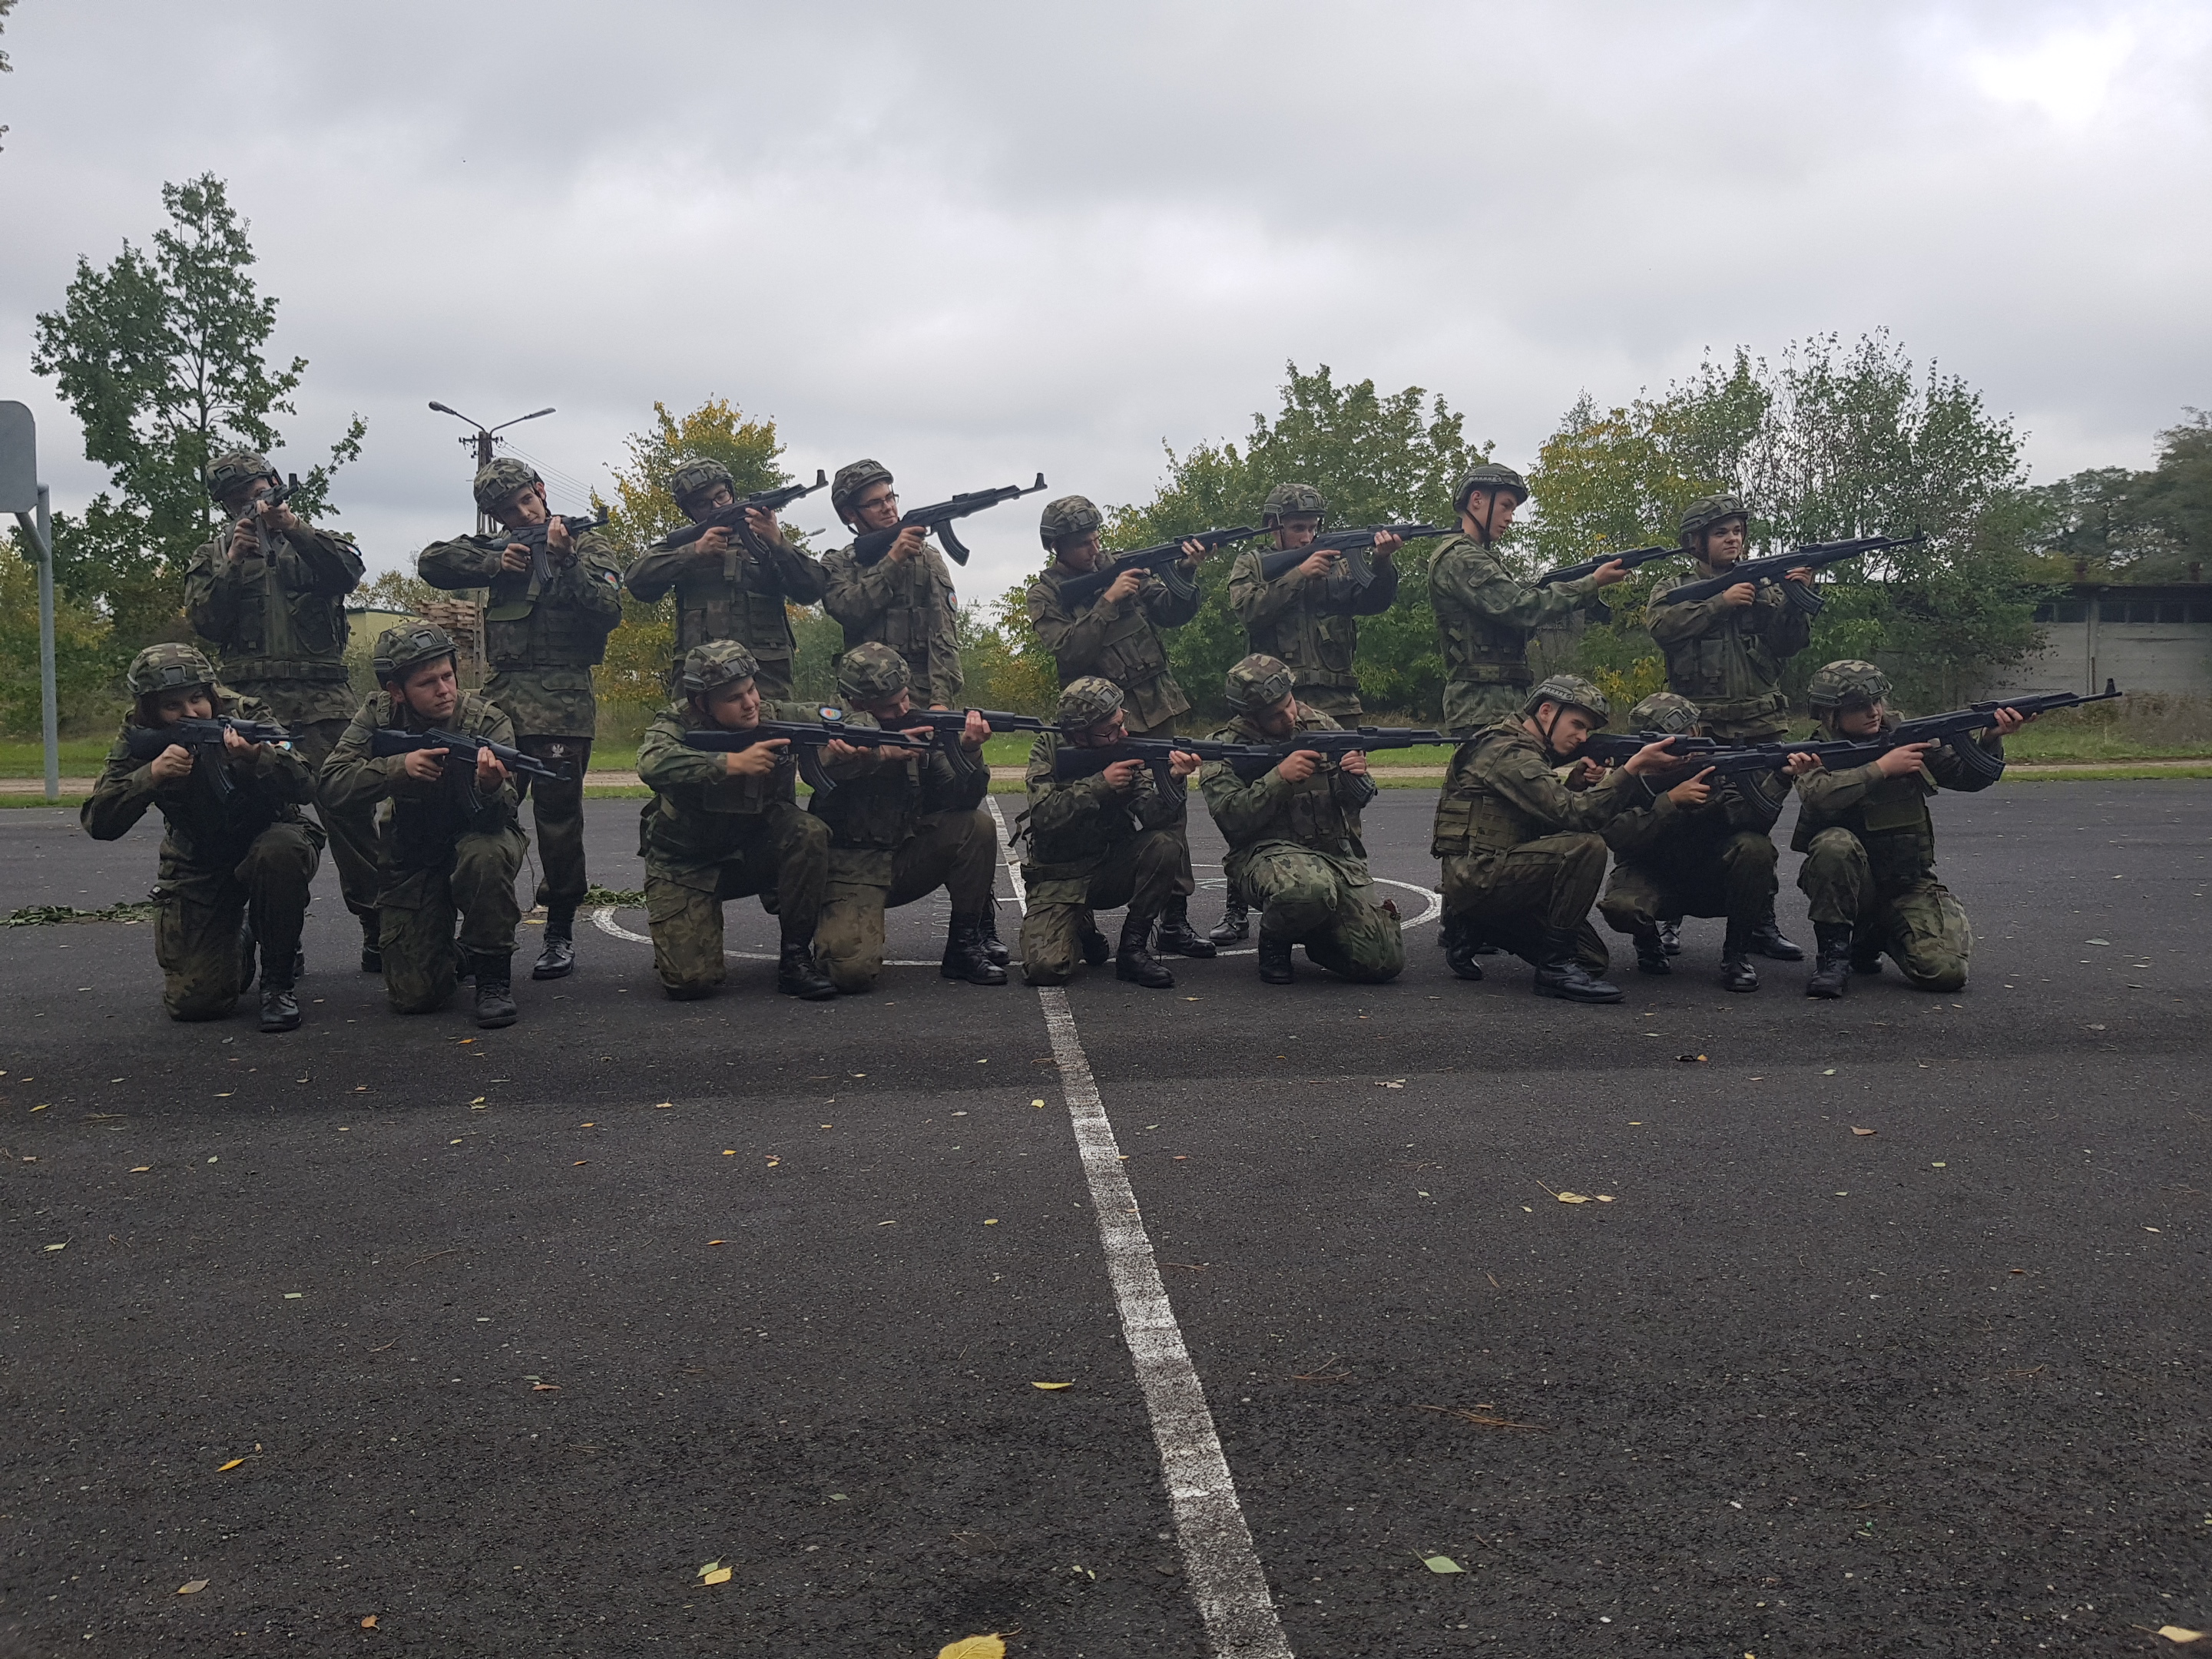 Wojskowy dzień szkoleniowy w Kościelcu